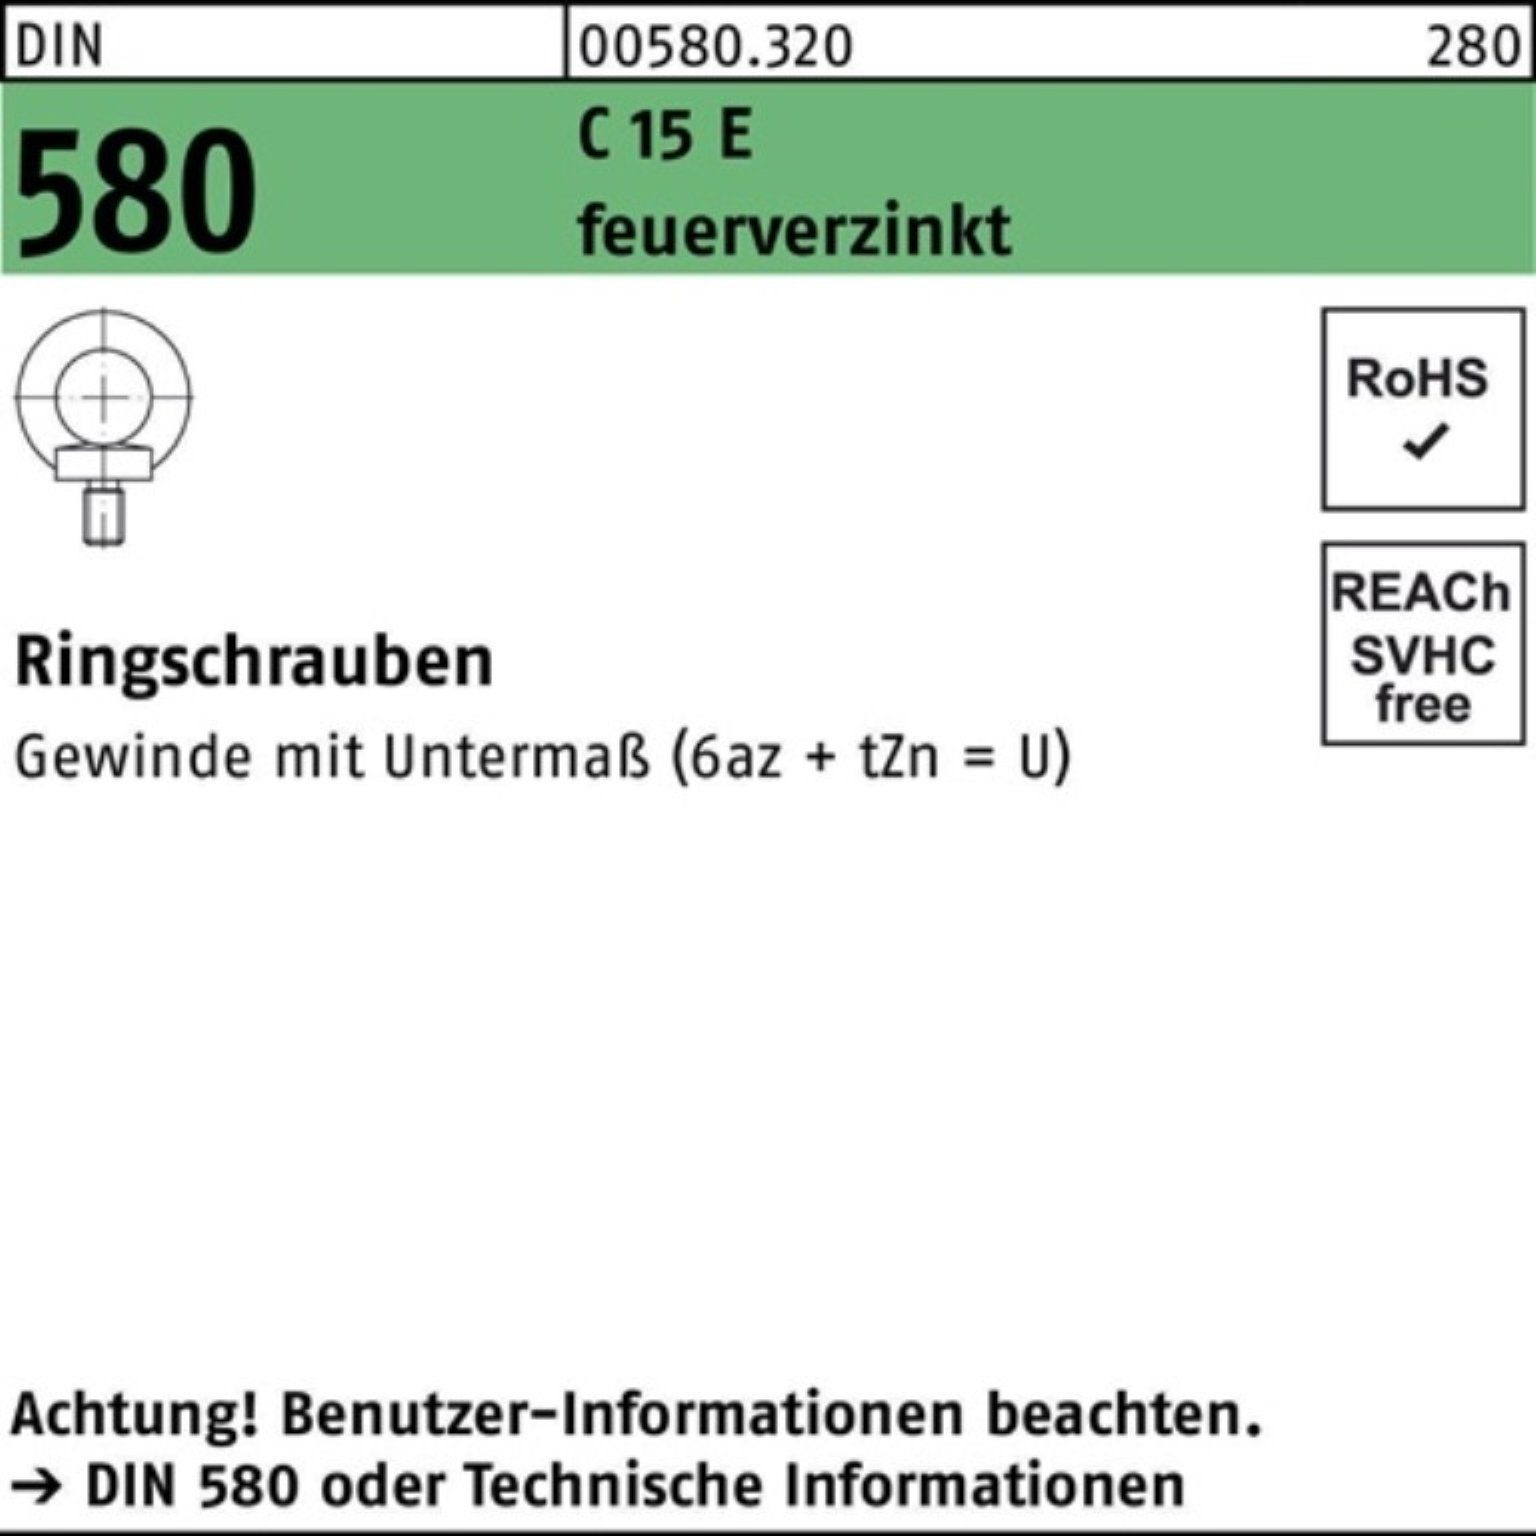 Reyher Schraube 100er Pack Ringschraube DIN 580 M20 C 15 E feuerverz. 1 Stück DIN 580